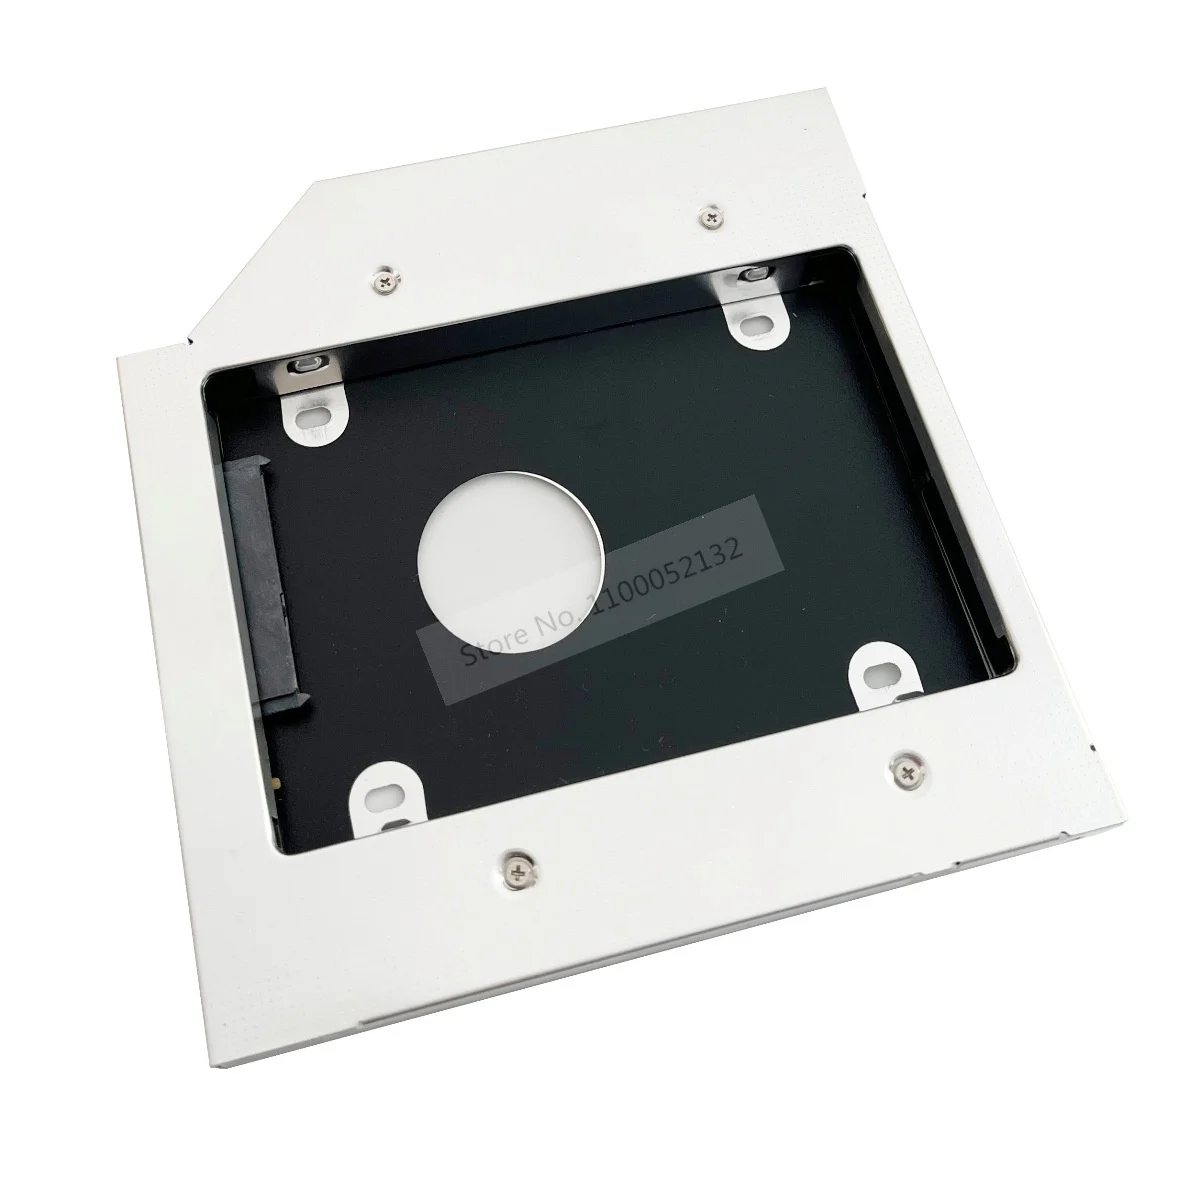 Alumínio 2ª Unidade de disco Rígido HDD SSD Caso Óptico Caddy SATA para Fujitsu Lifebook E751 S751 E752 E780 E781 E782 T900 T901 S780 S710 Imagem 4